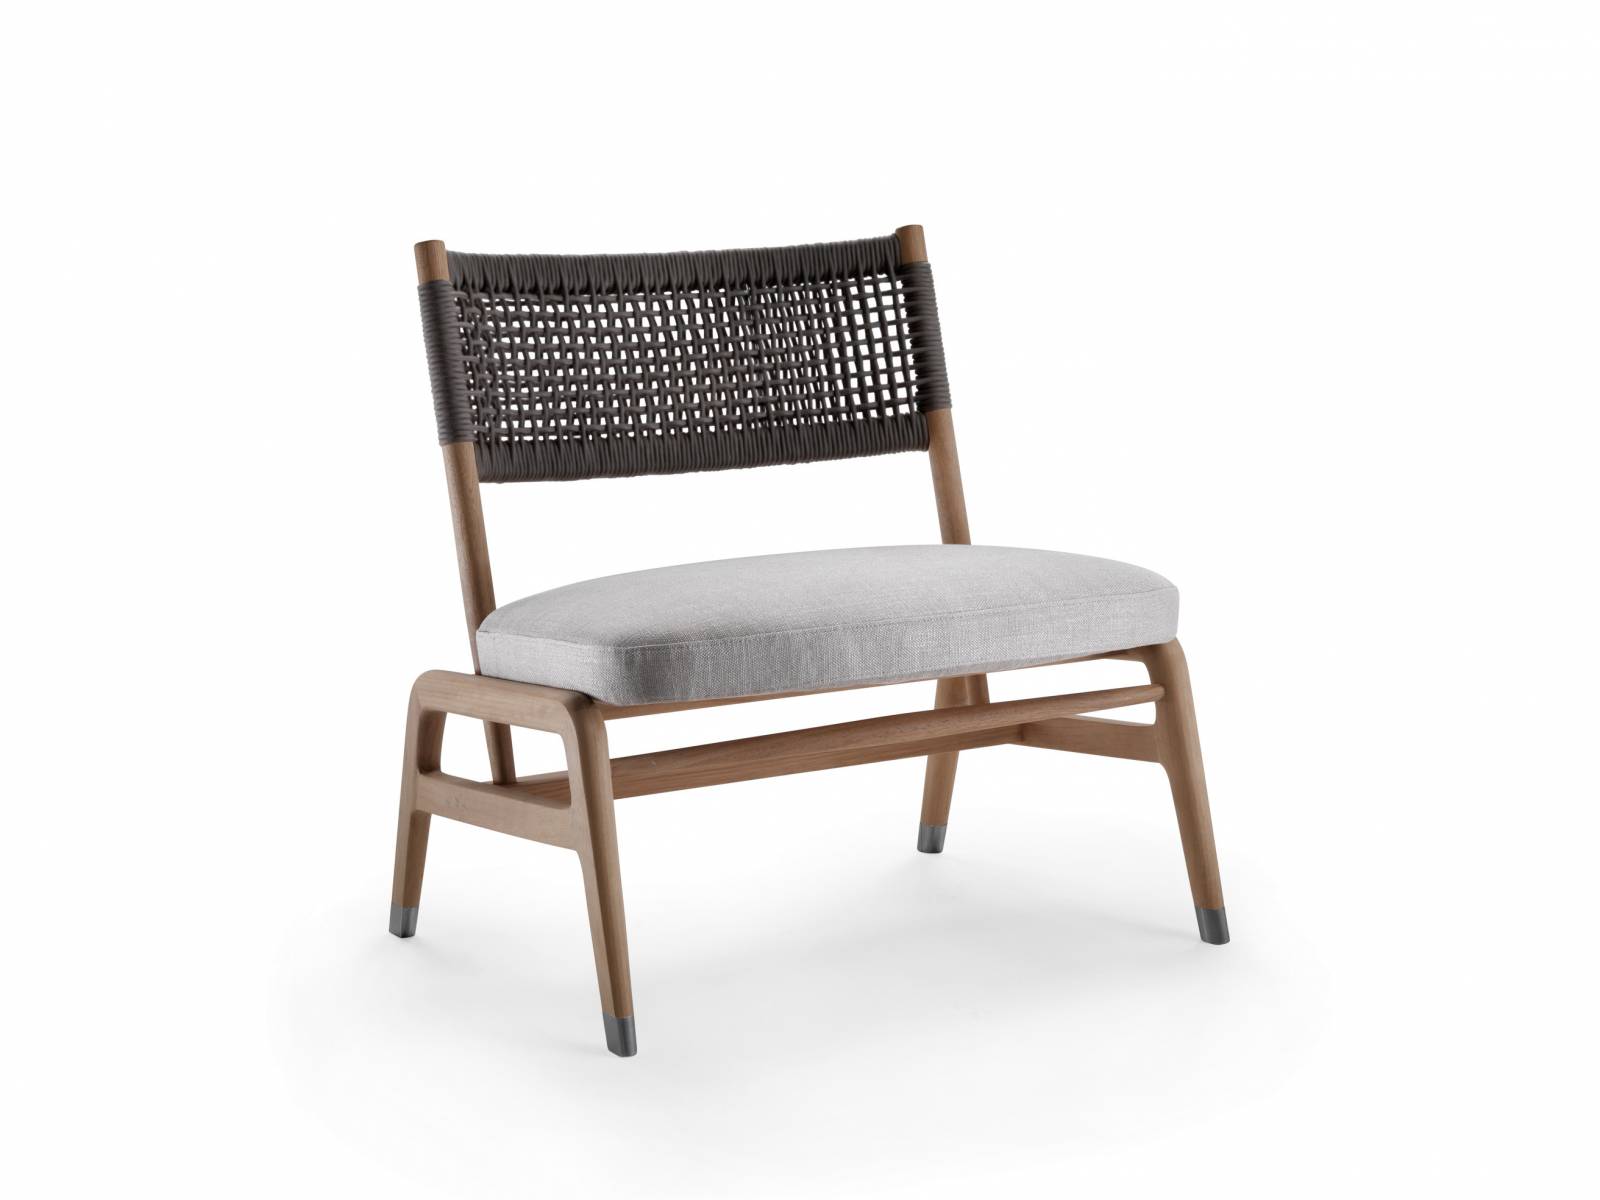 «Ortigia» fällt durch sein aussergewöhnlich Holzgestell aus Nussbaum oder Esche auf. Der gepolsterte Sitz ist mit Stoff oder Leder bezogen, während ein handgearbeitetes Ledergeflecht die Rückenlehne bildet. Flexform.